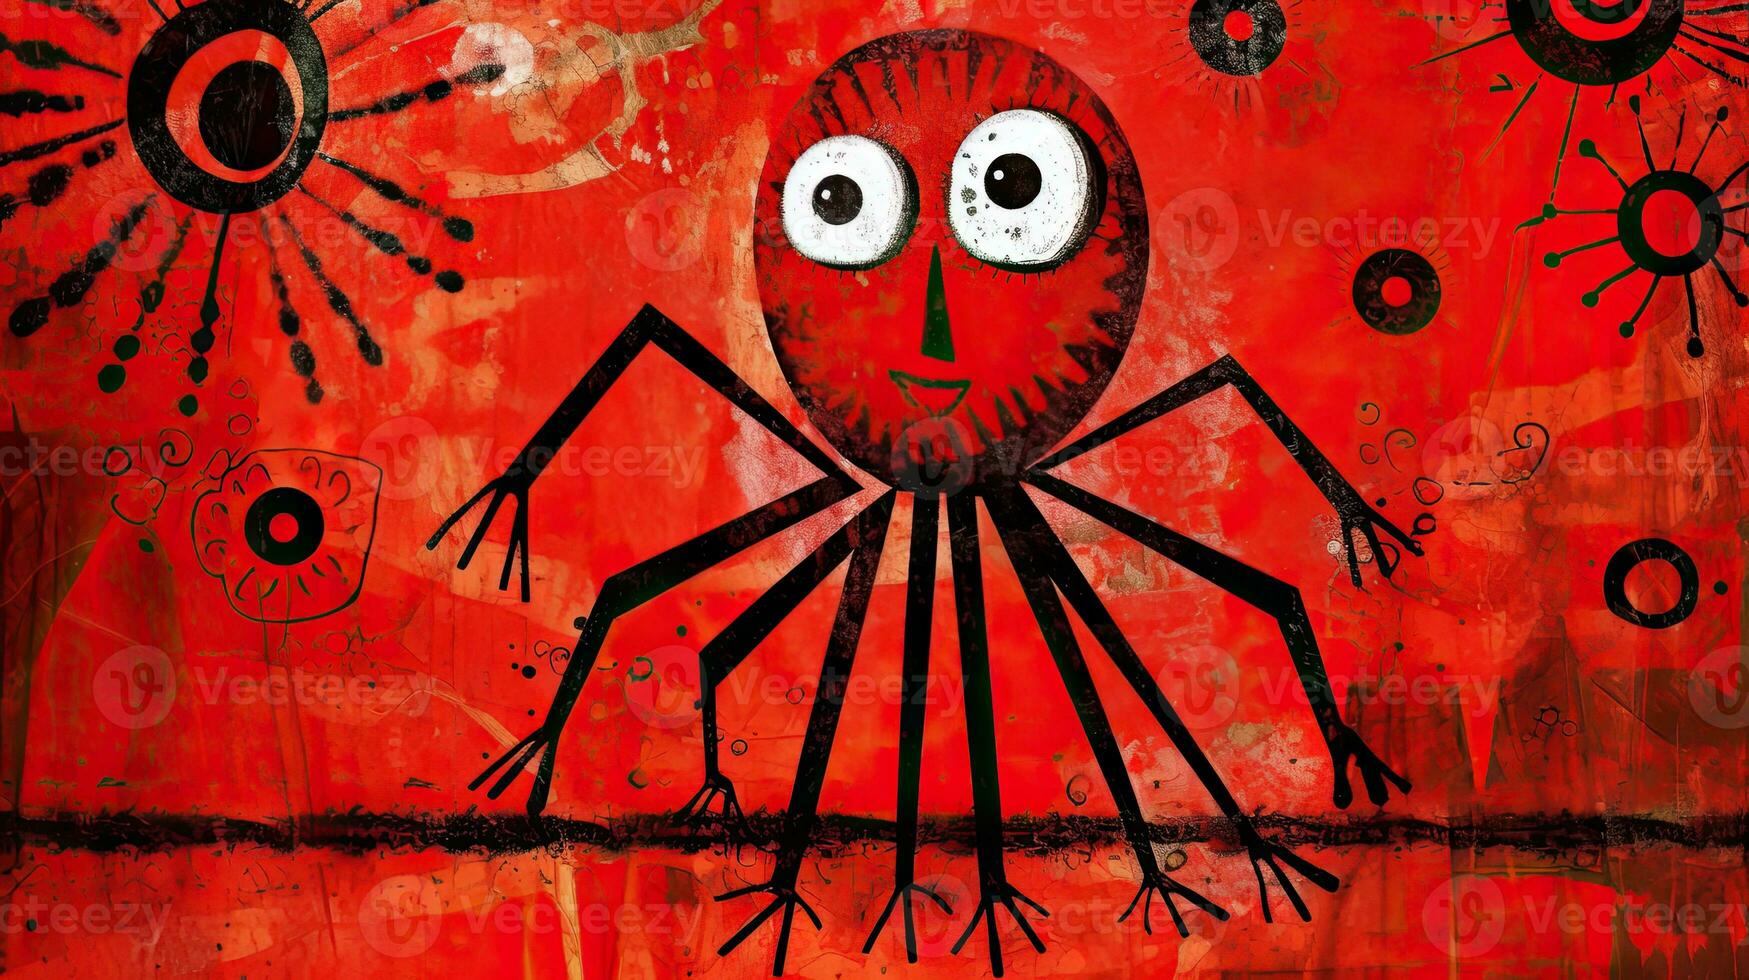 spider expressive children illustration painting scrapbook hand drawn artwork cute cartoon photo